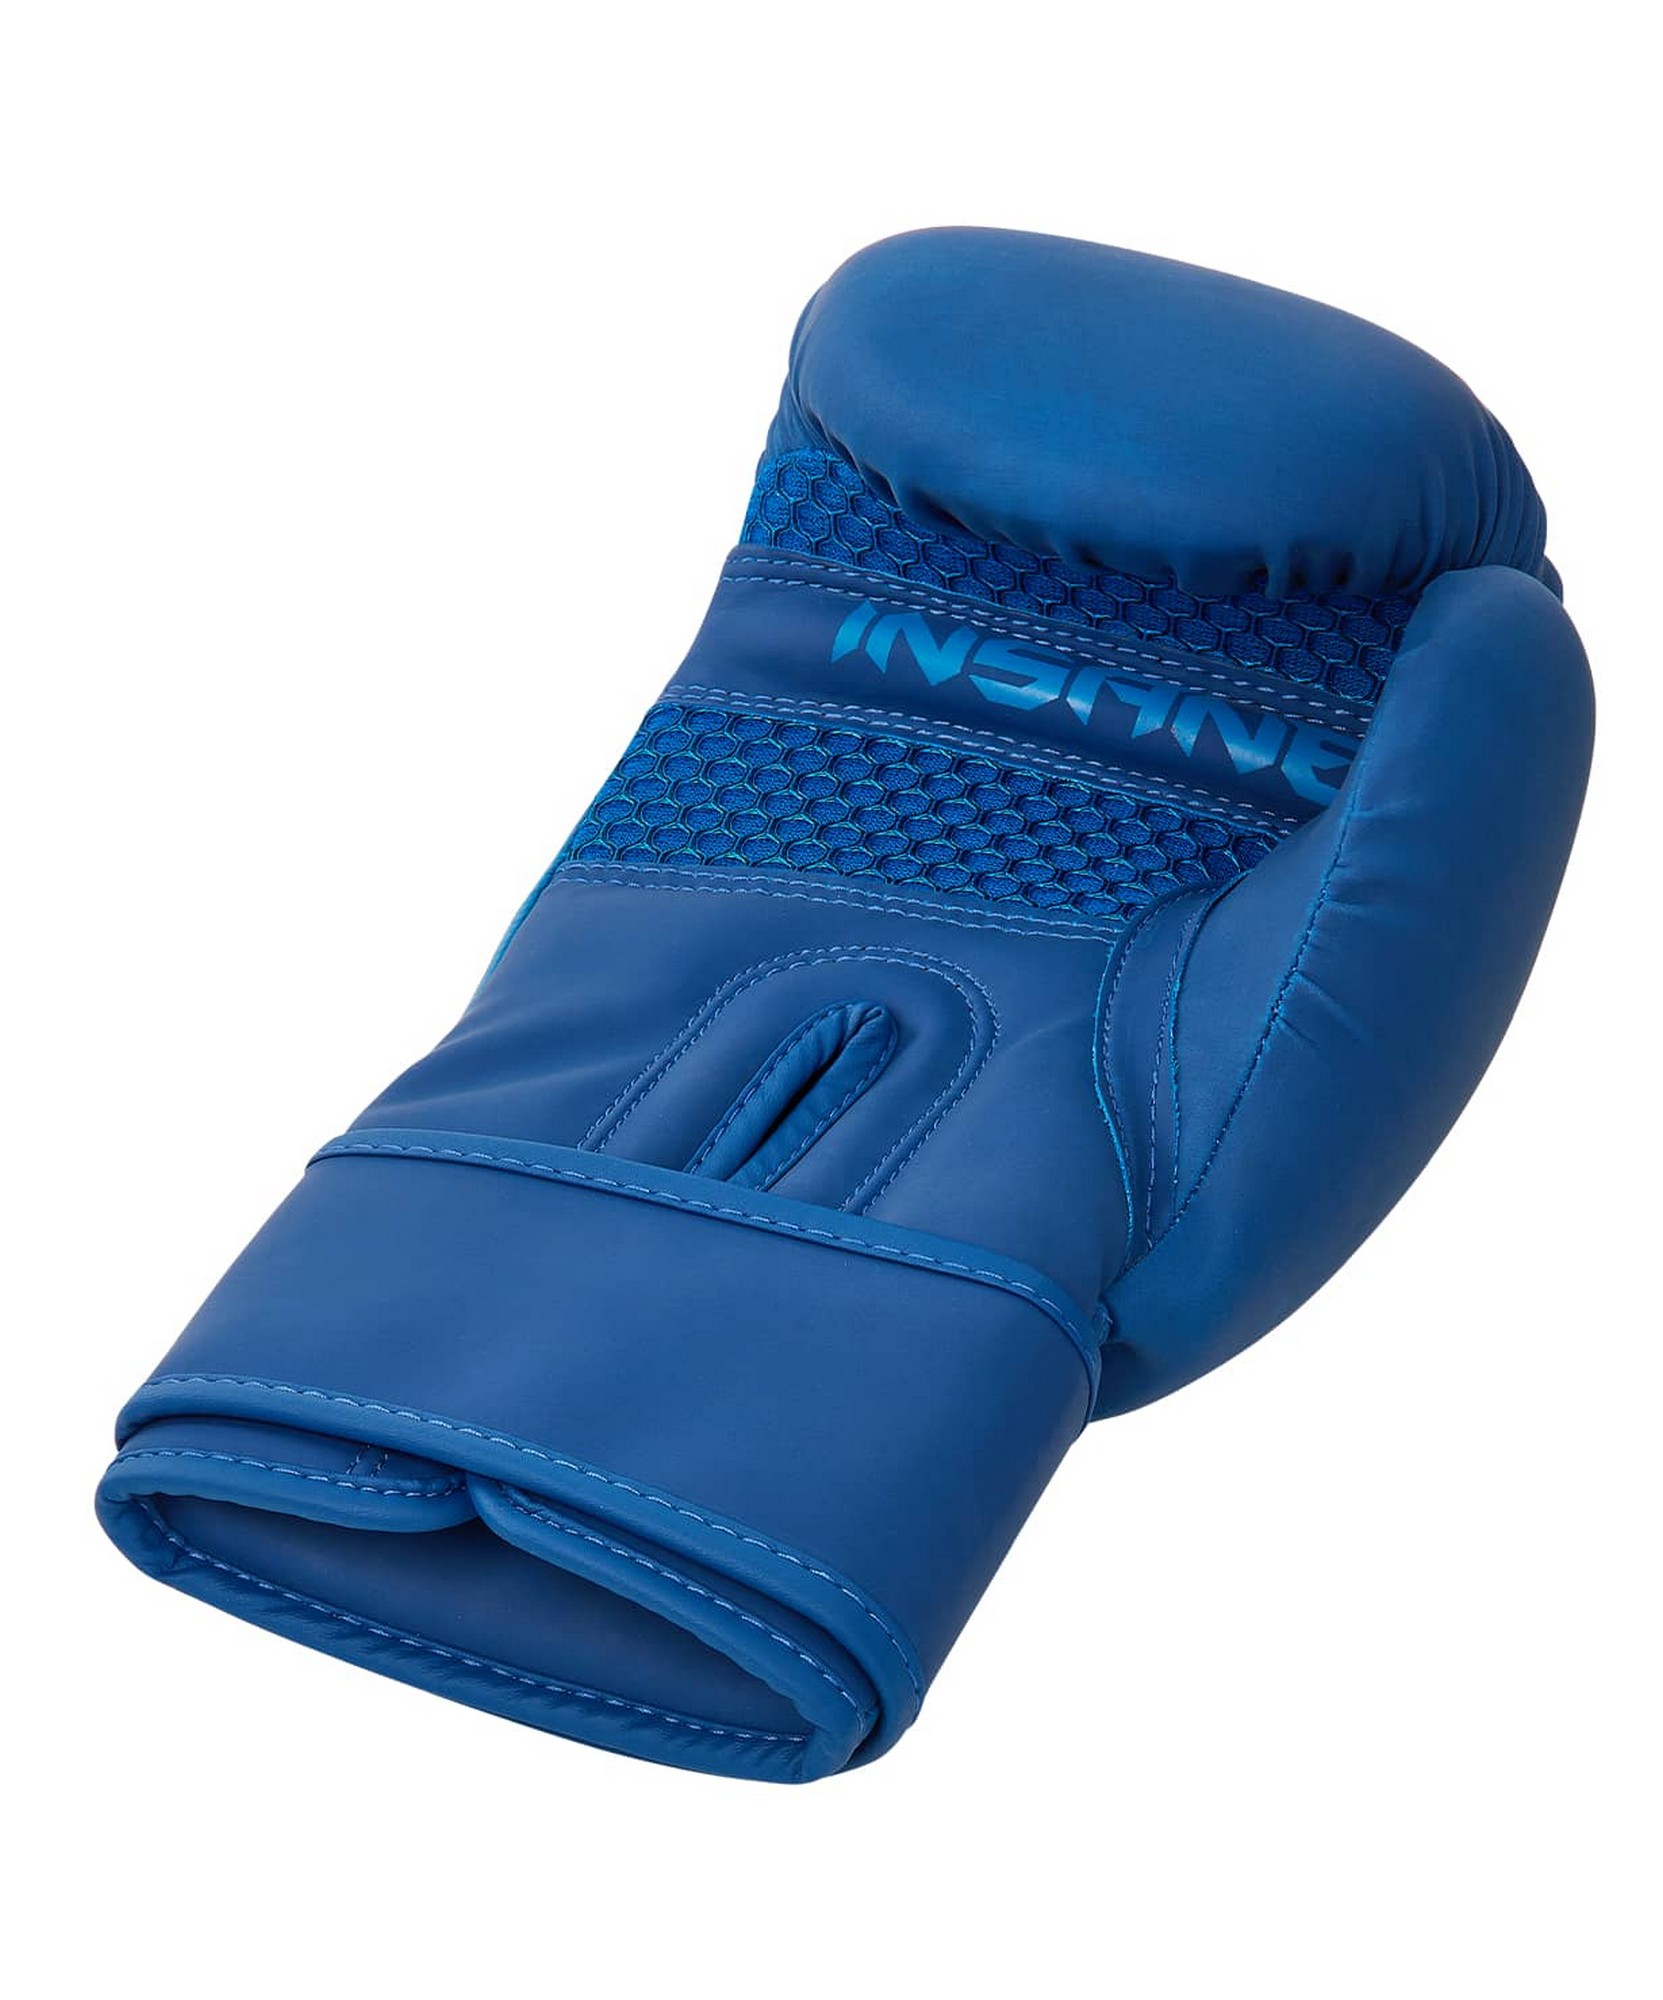 Перчатки боксерские Insane ORO, ПУ, 8 oz, синий 1663_2000